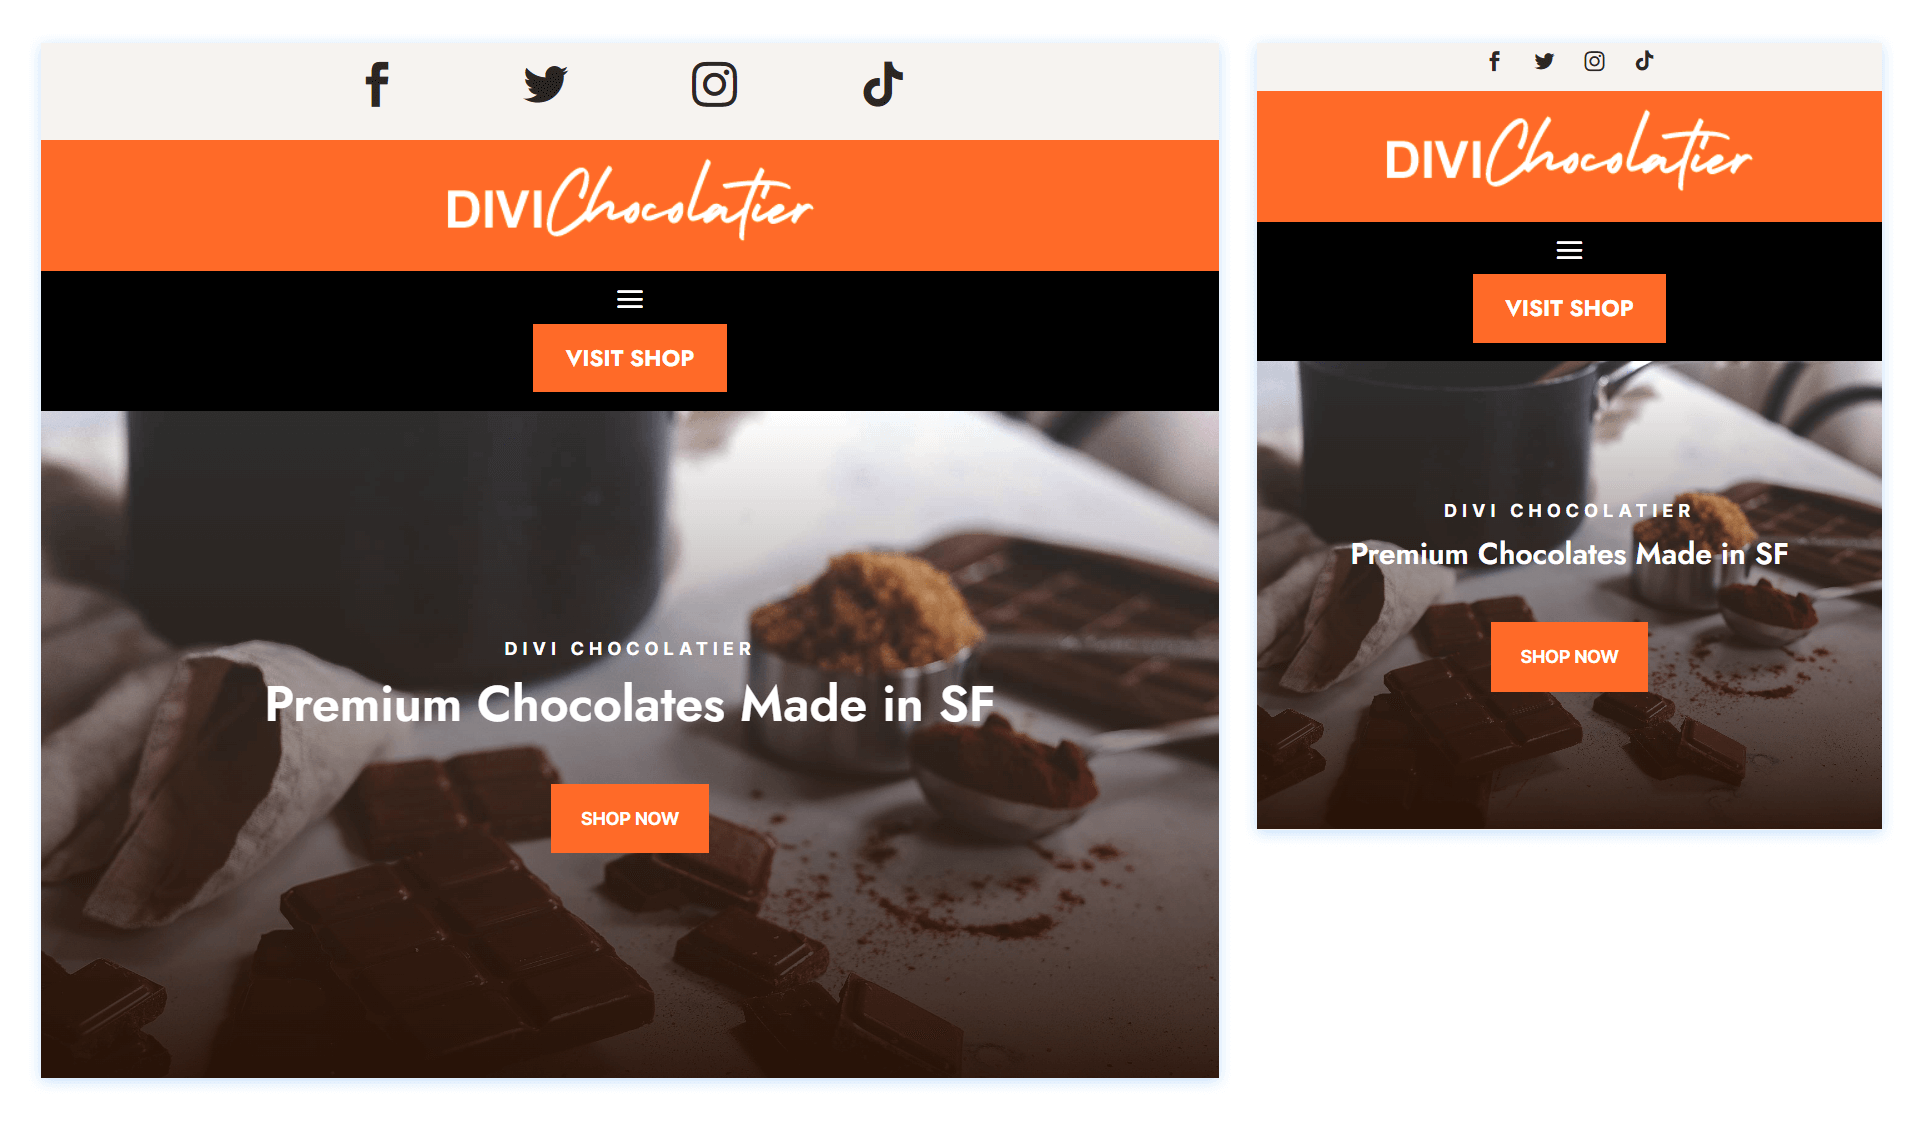 بسته چیدمان هدر Divi Chocolatier در نمای تبلت و موبایل